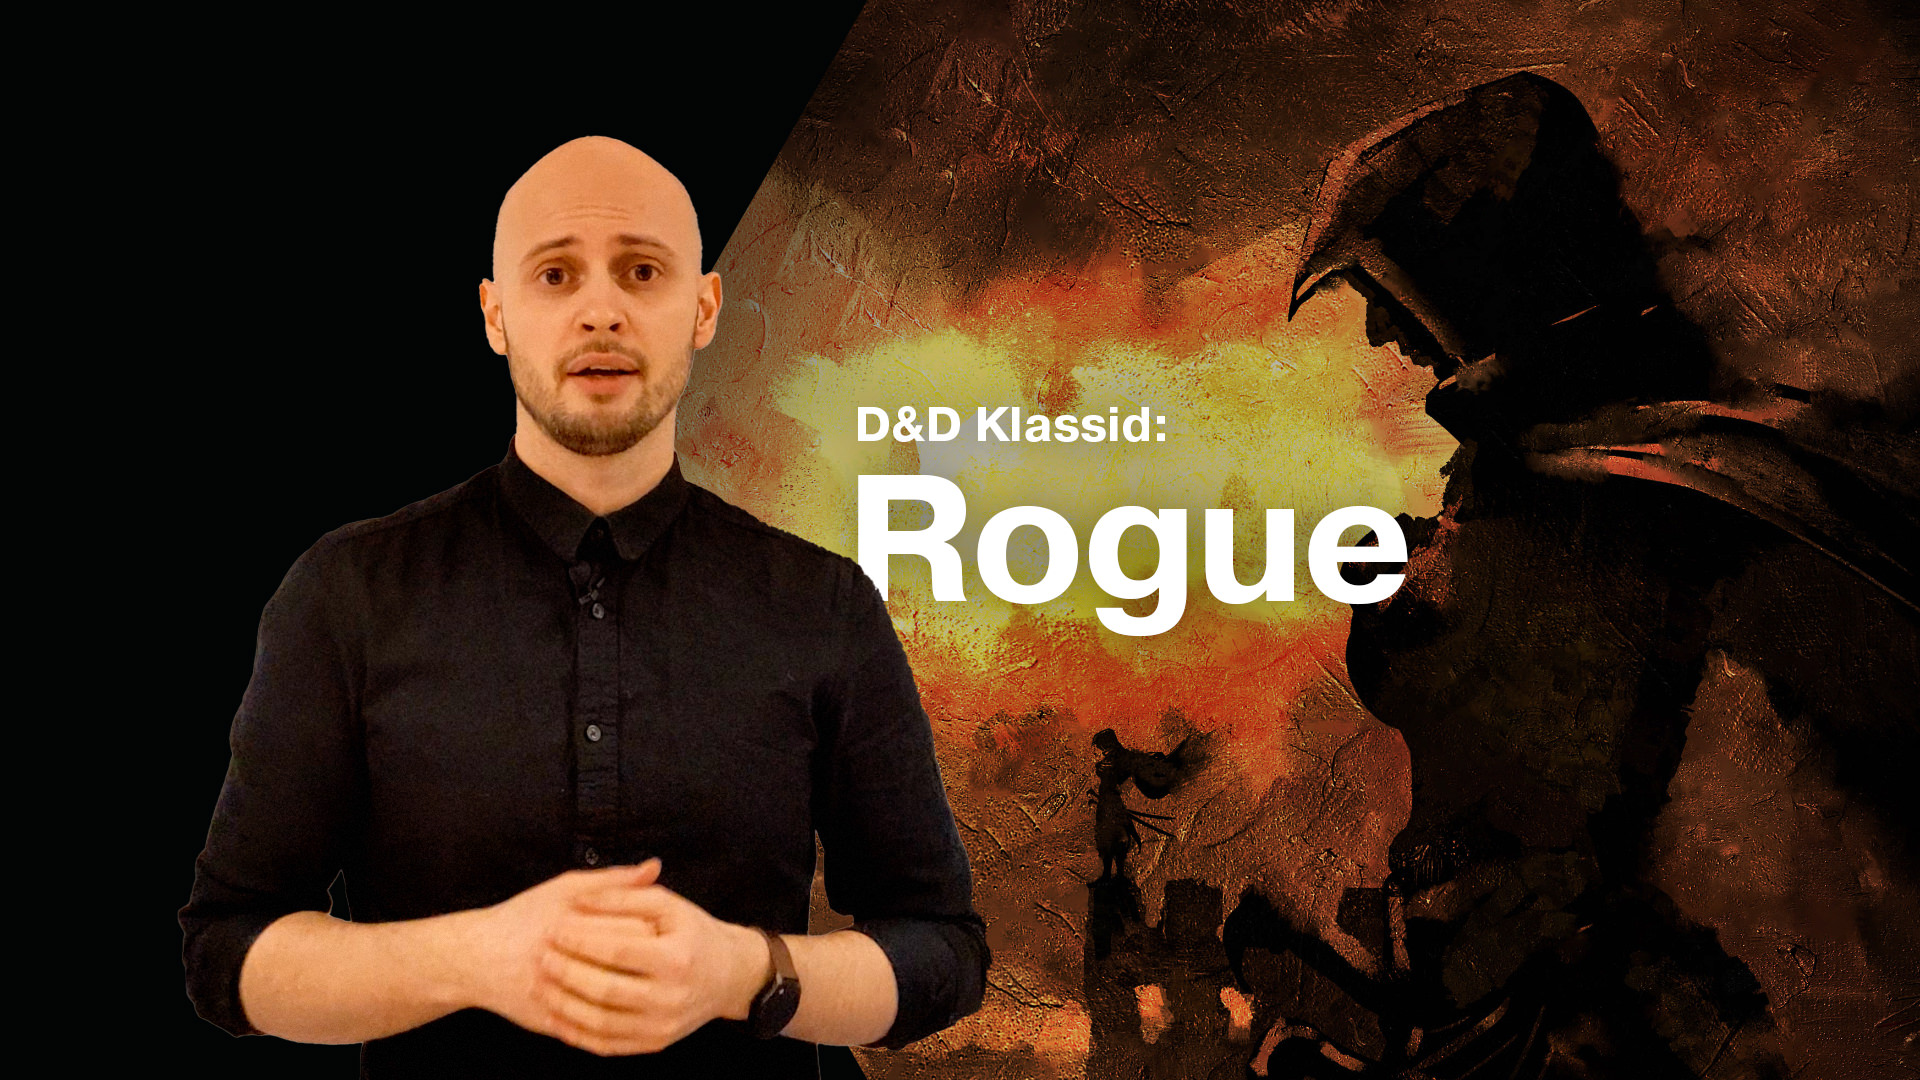 Video: D&D Klassid: Rogue